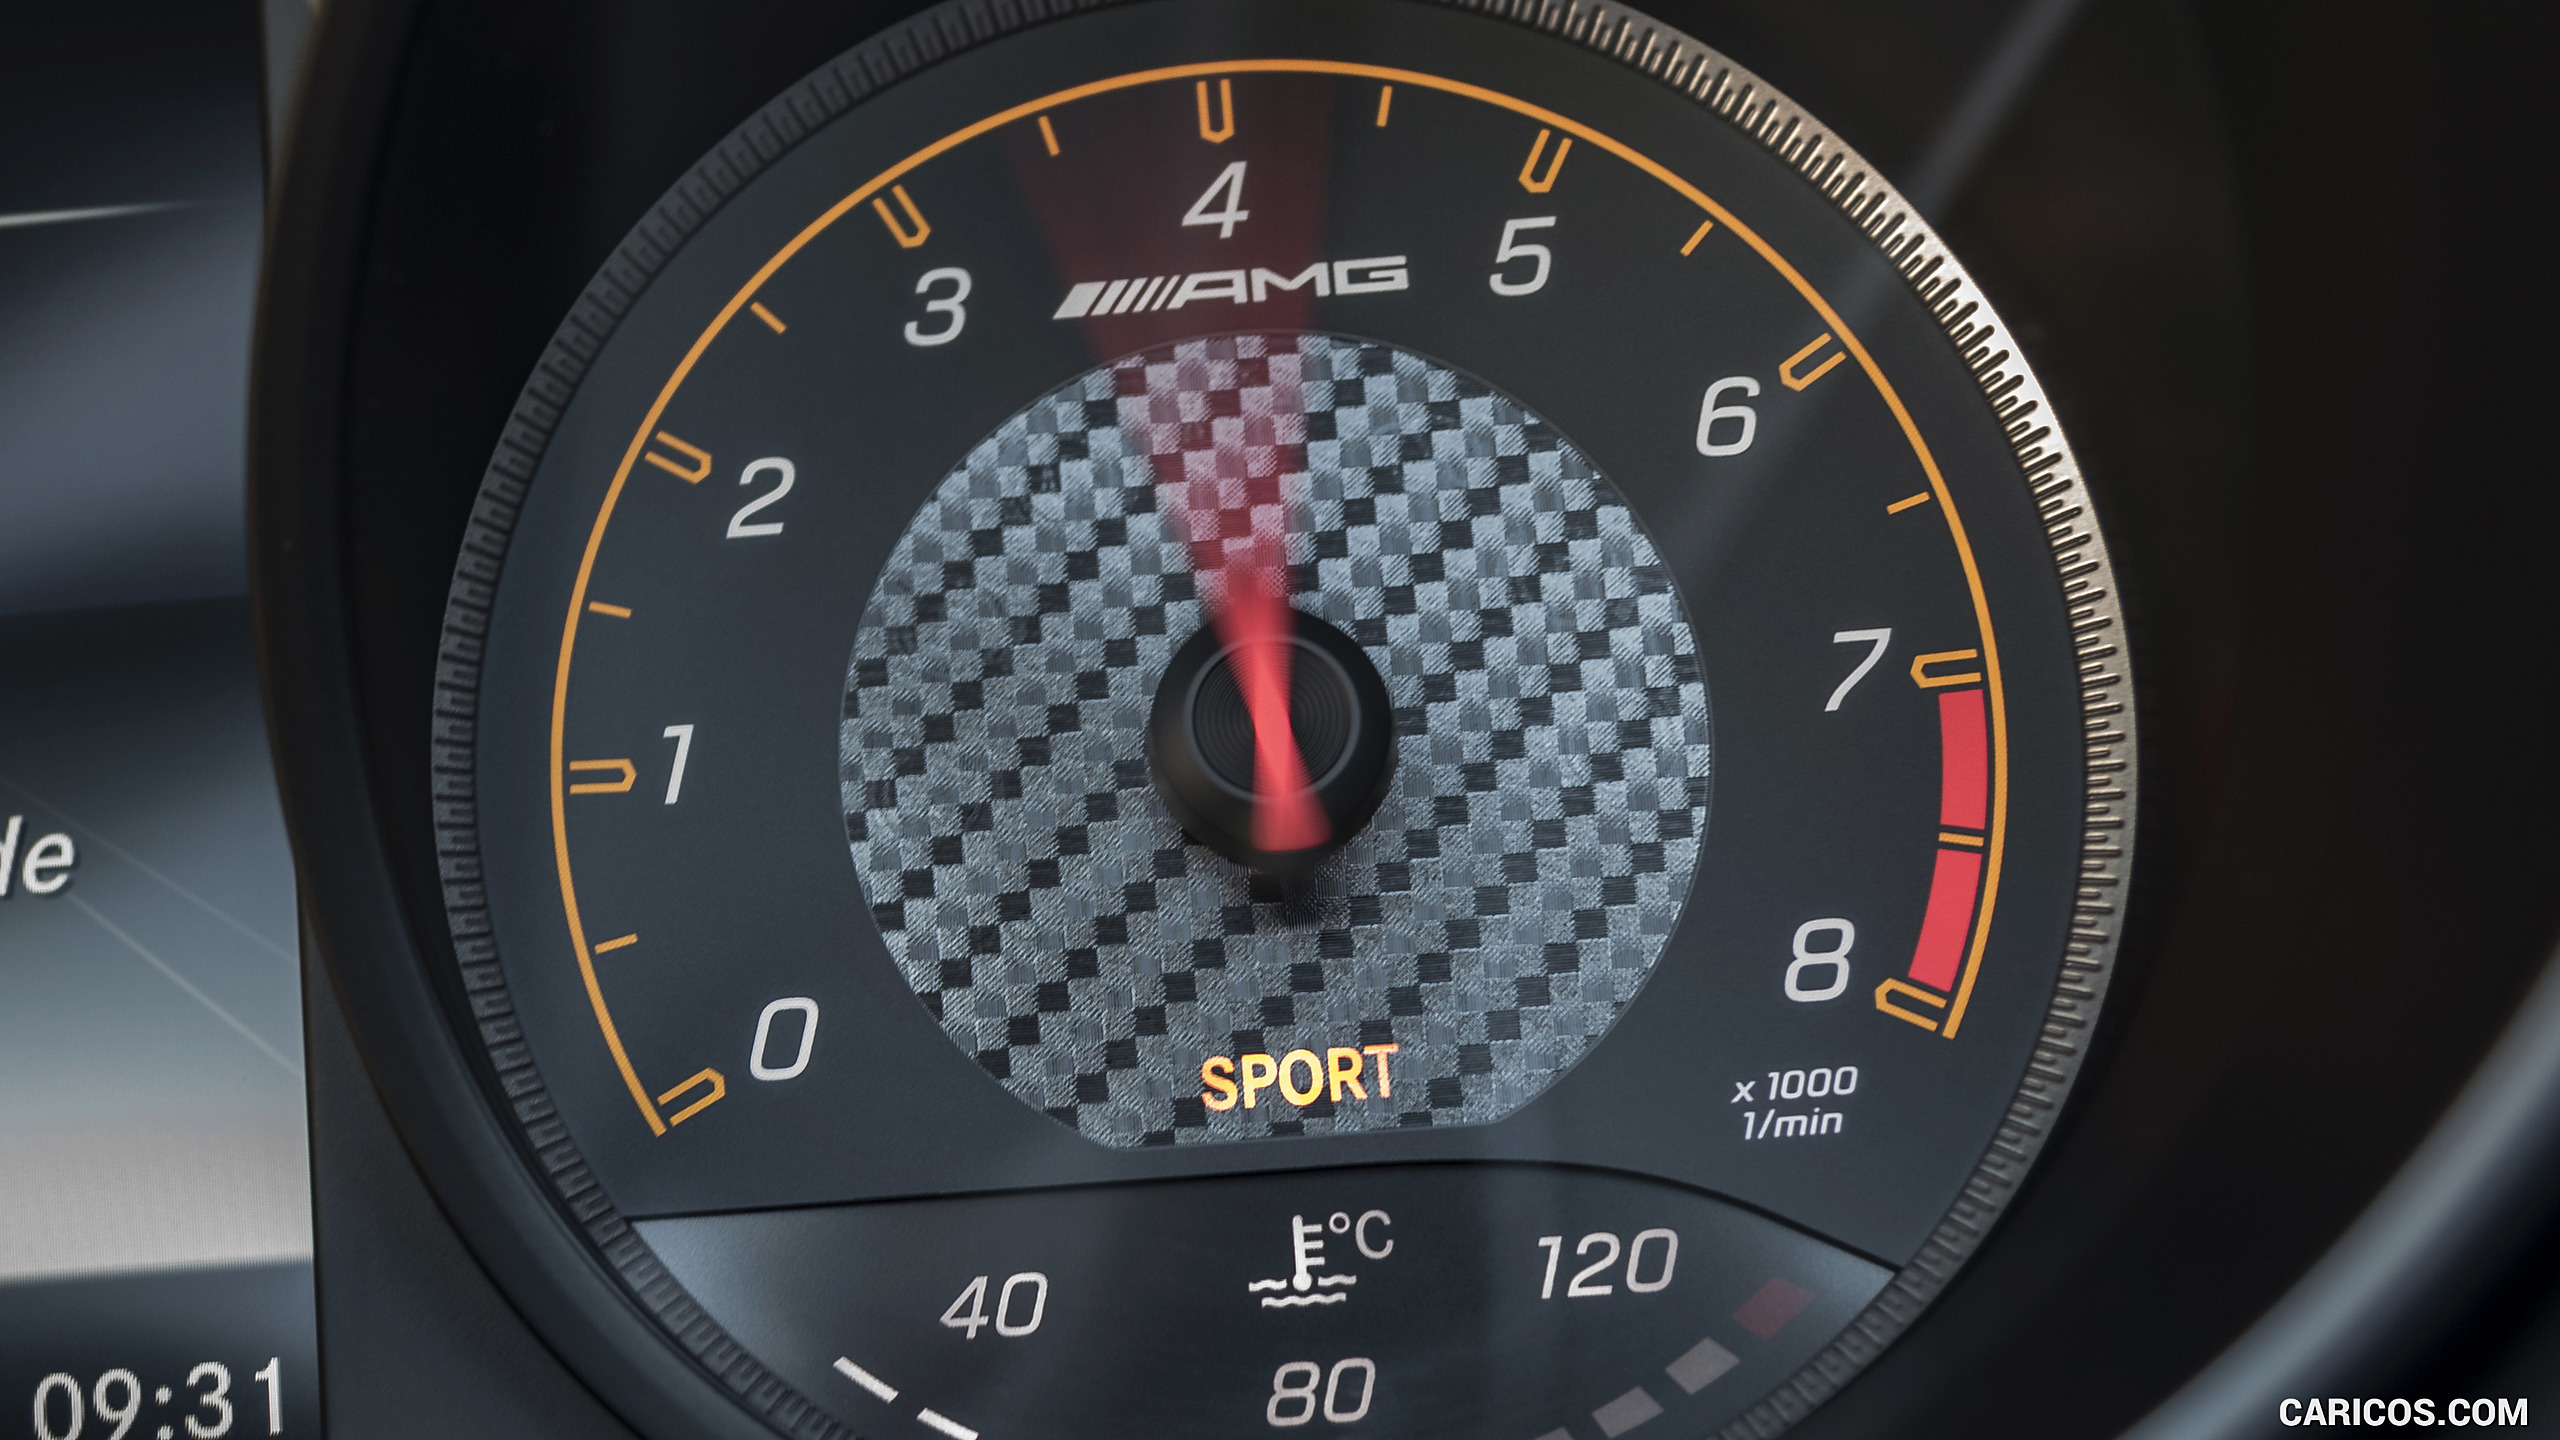 2018 Mercedes-AMG GT C Roadster - Instrument Cluster, #276 of 350